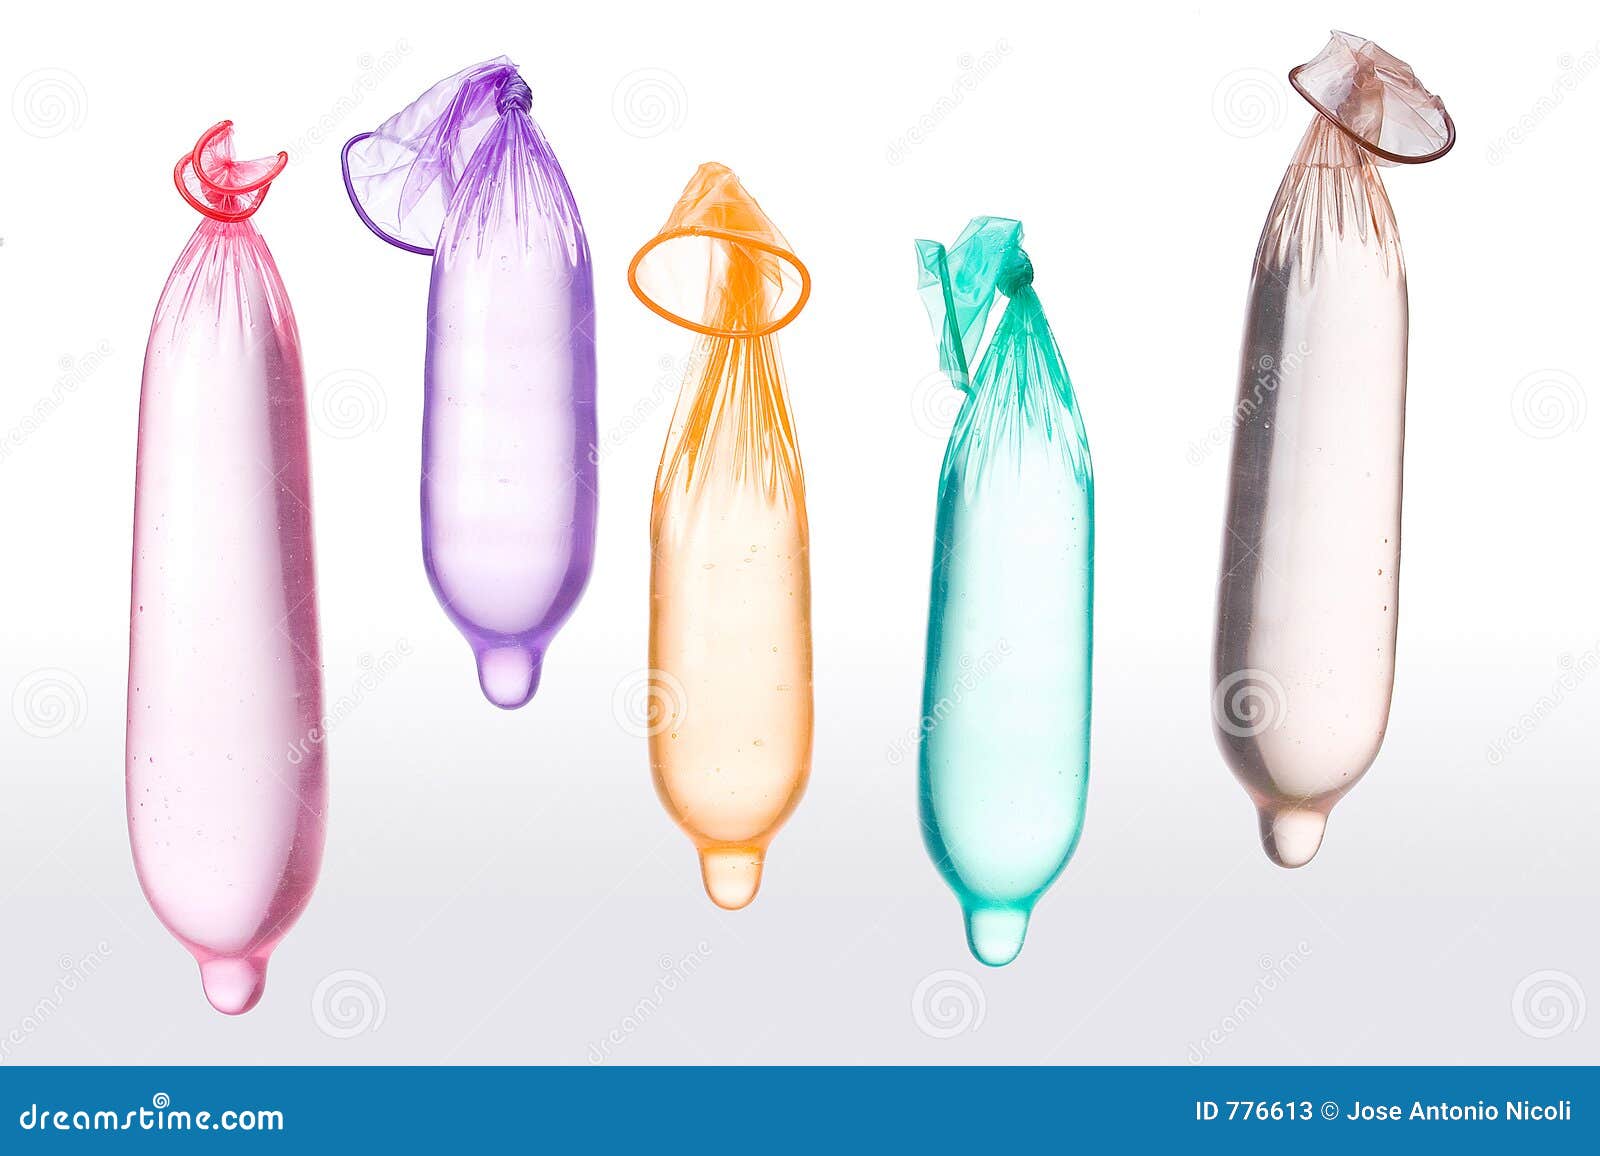 Как одевать презики. Презики с водой. Презерватив наполненный водой. Растянутый презерватив. Виды презиков с шариками.